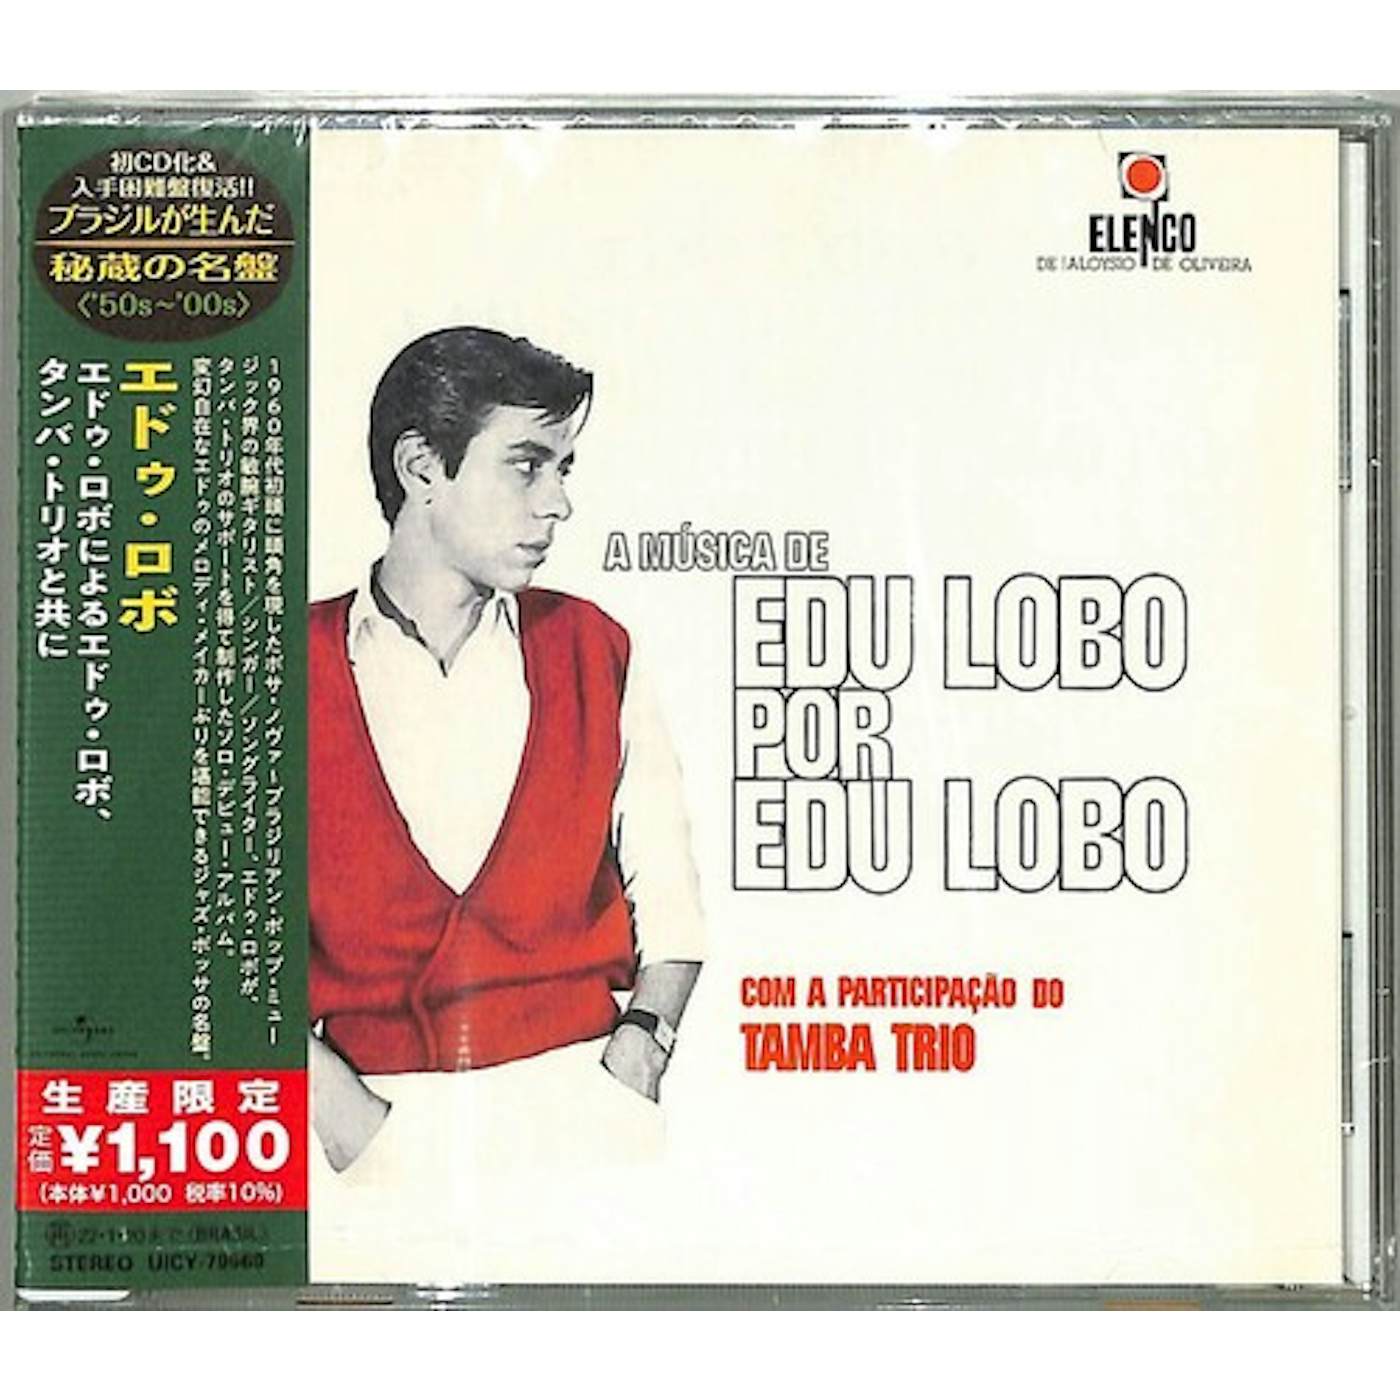 Edu Lobo COM A PARTICIPACAO DO TAMBA TRIO CD